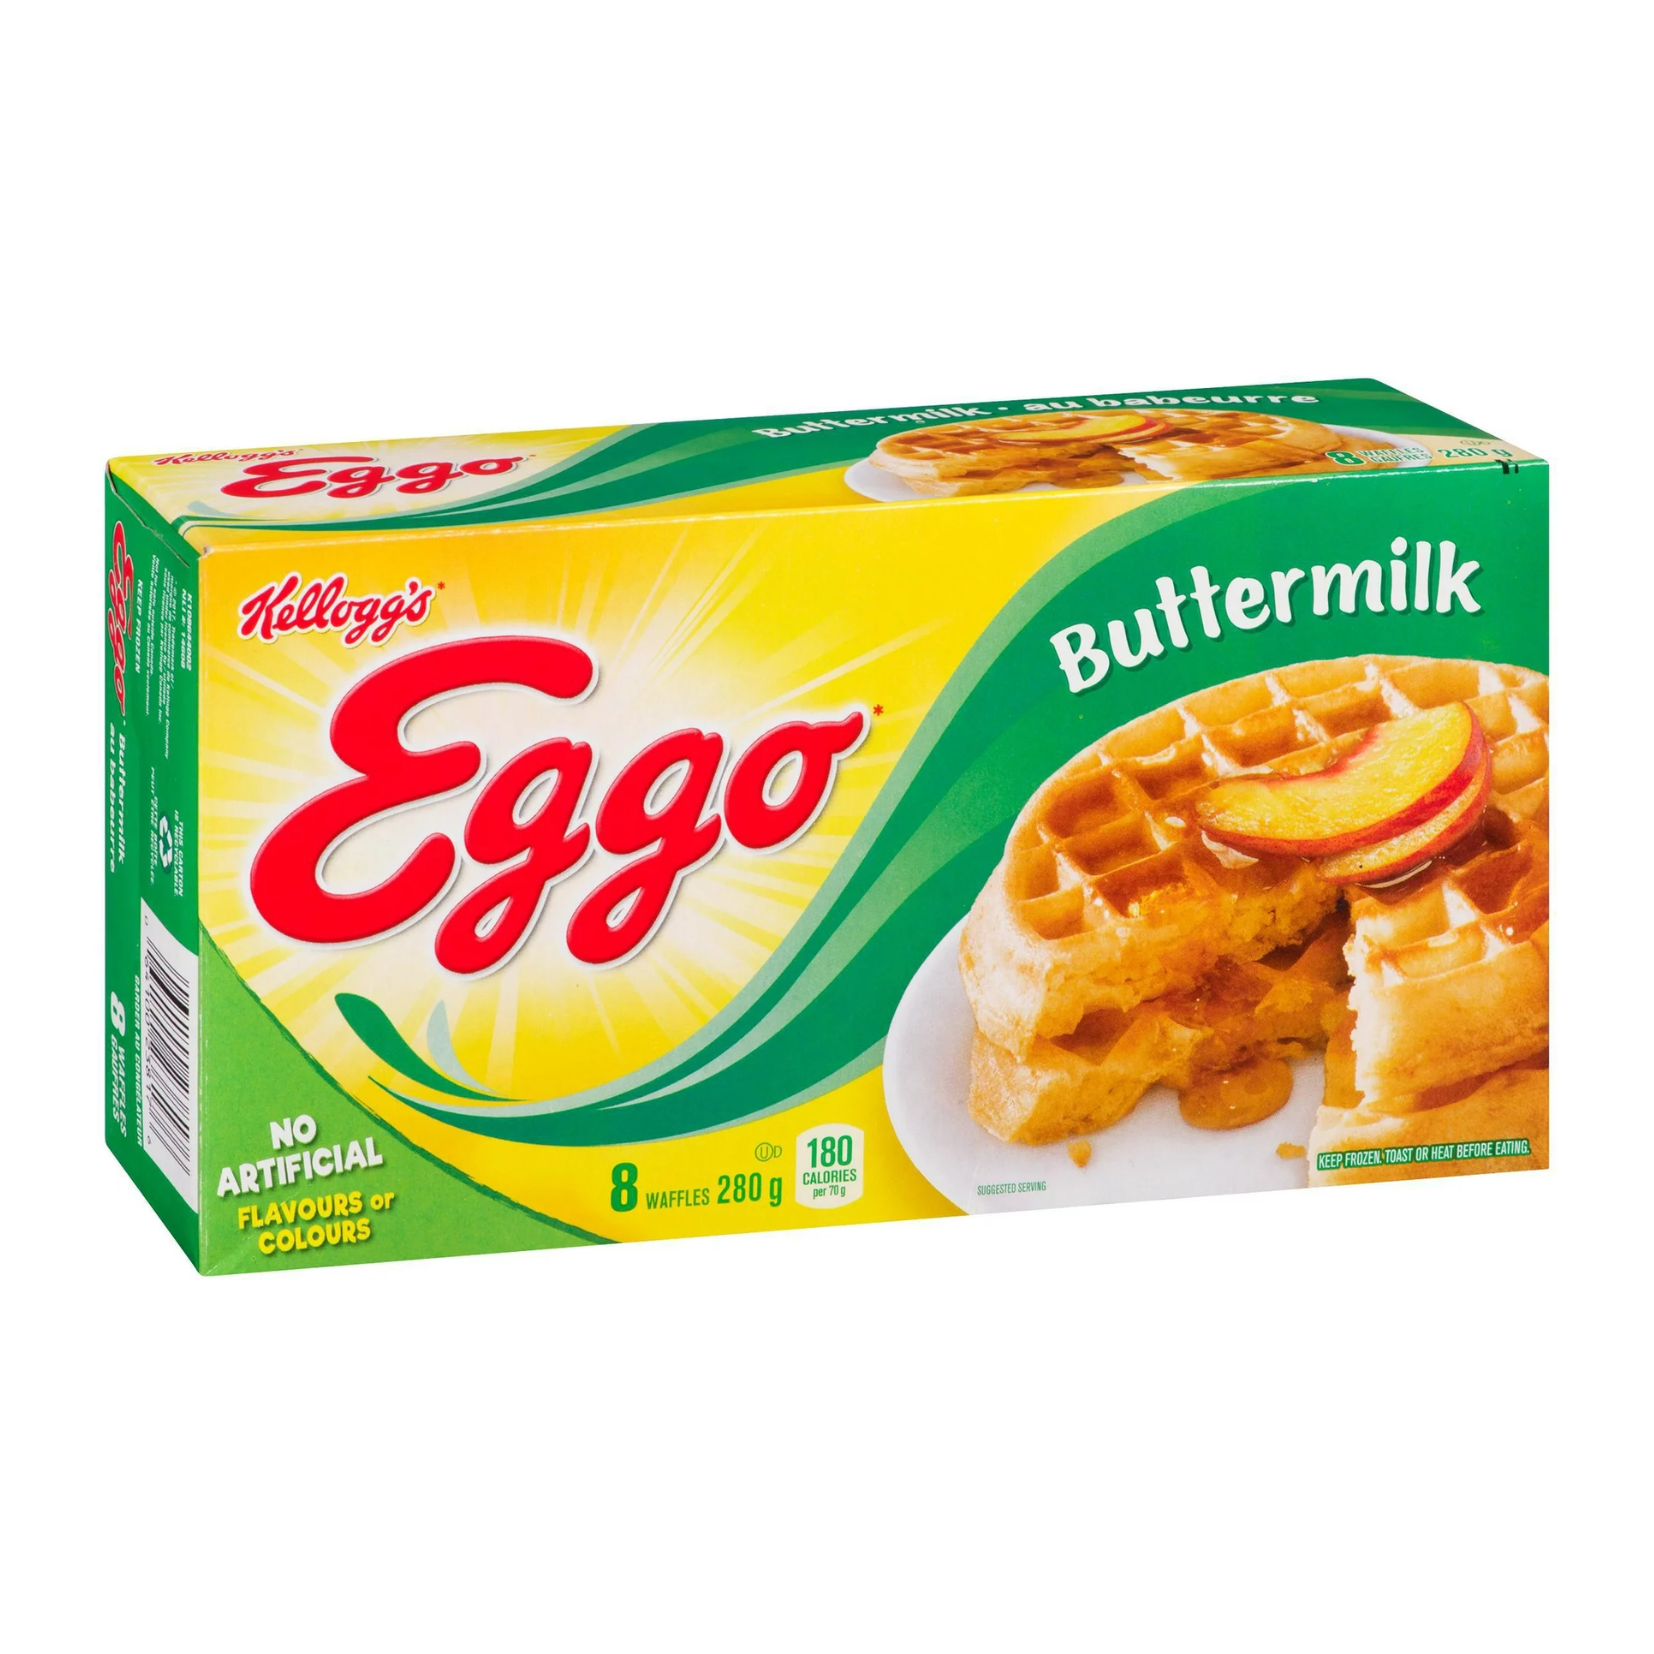 Eggo Buttermilk Waffles 280g